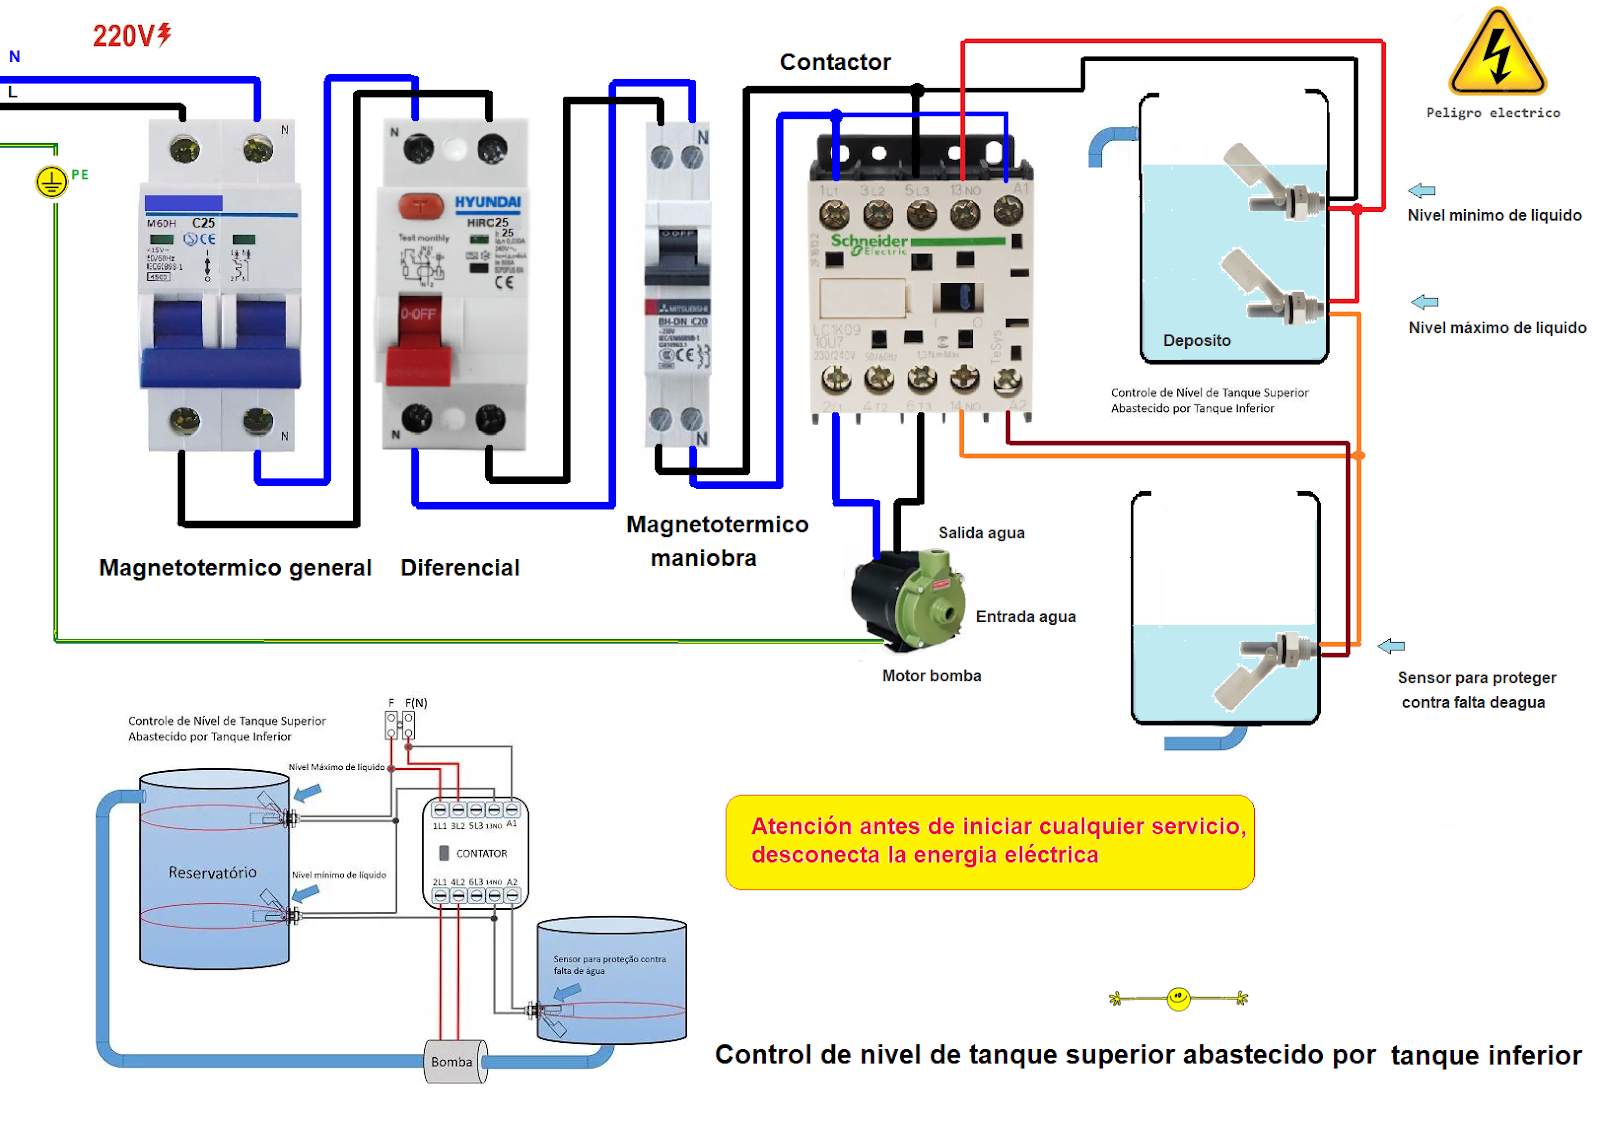 personalizado seguramente plataforma Blog electricidad-Esquemas electricos: Control de nivel de tanque